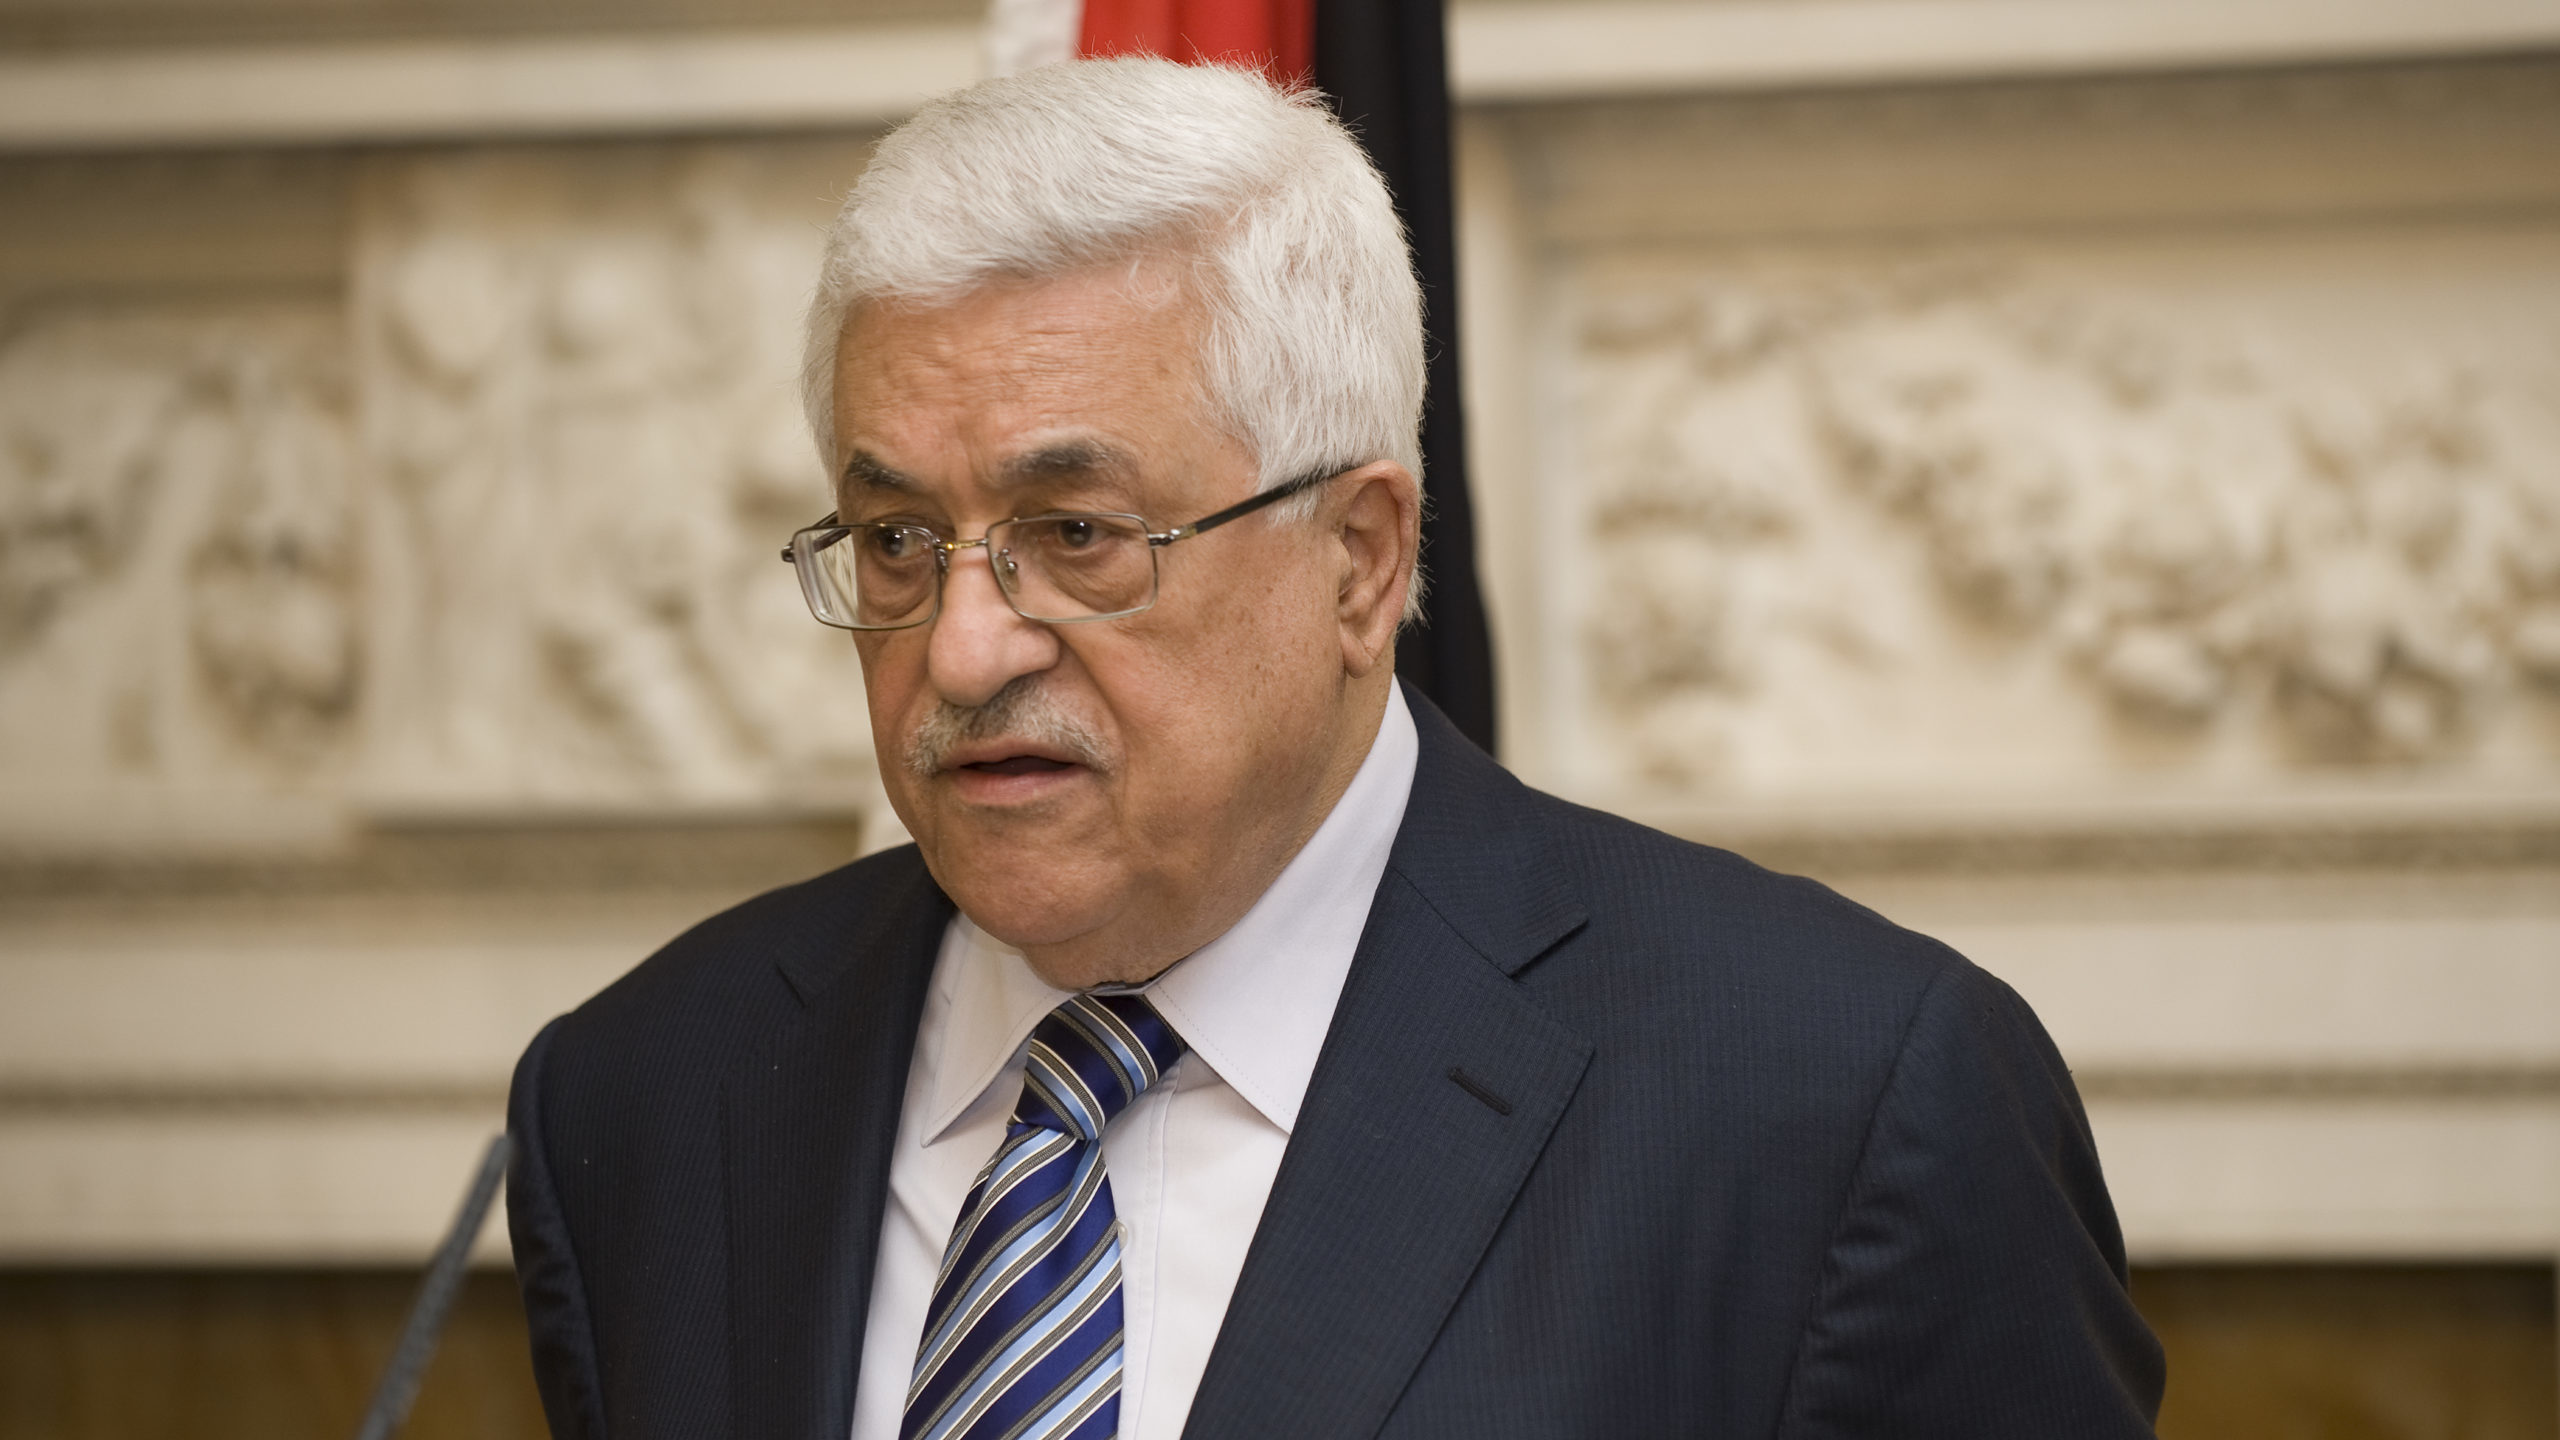 Benny Gantz, Mahmoud Abbas Meet in Ramallah